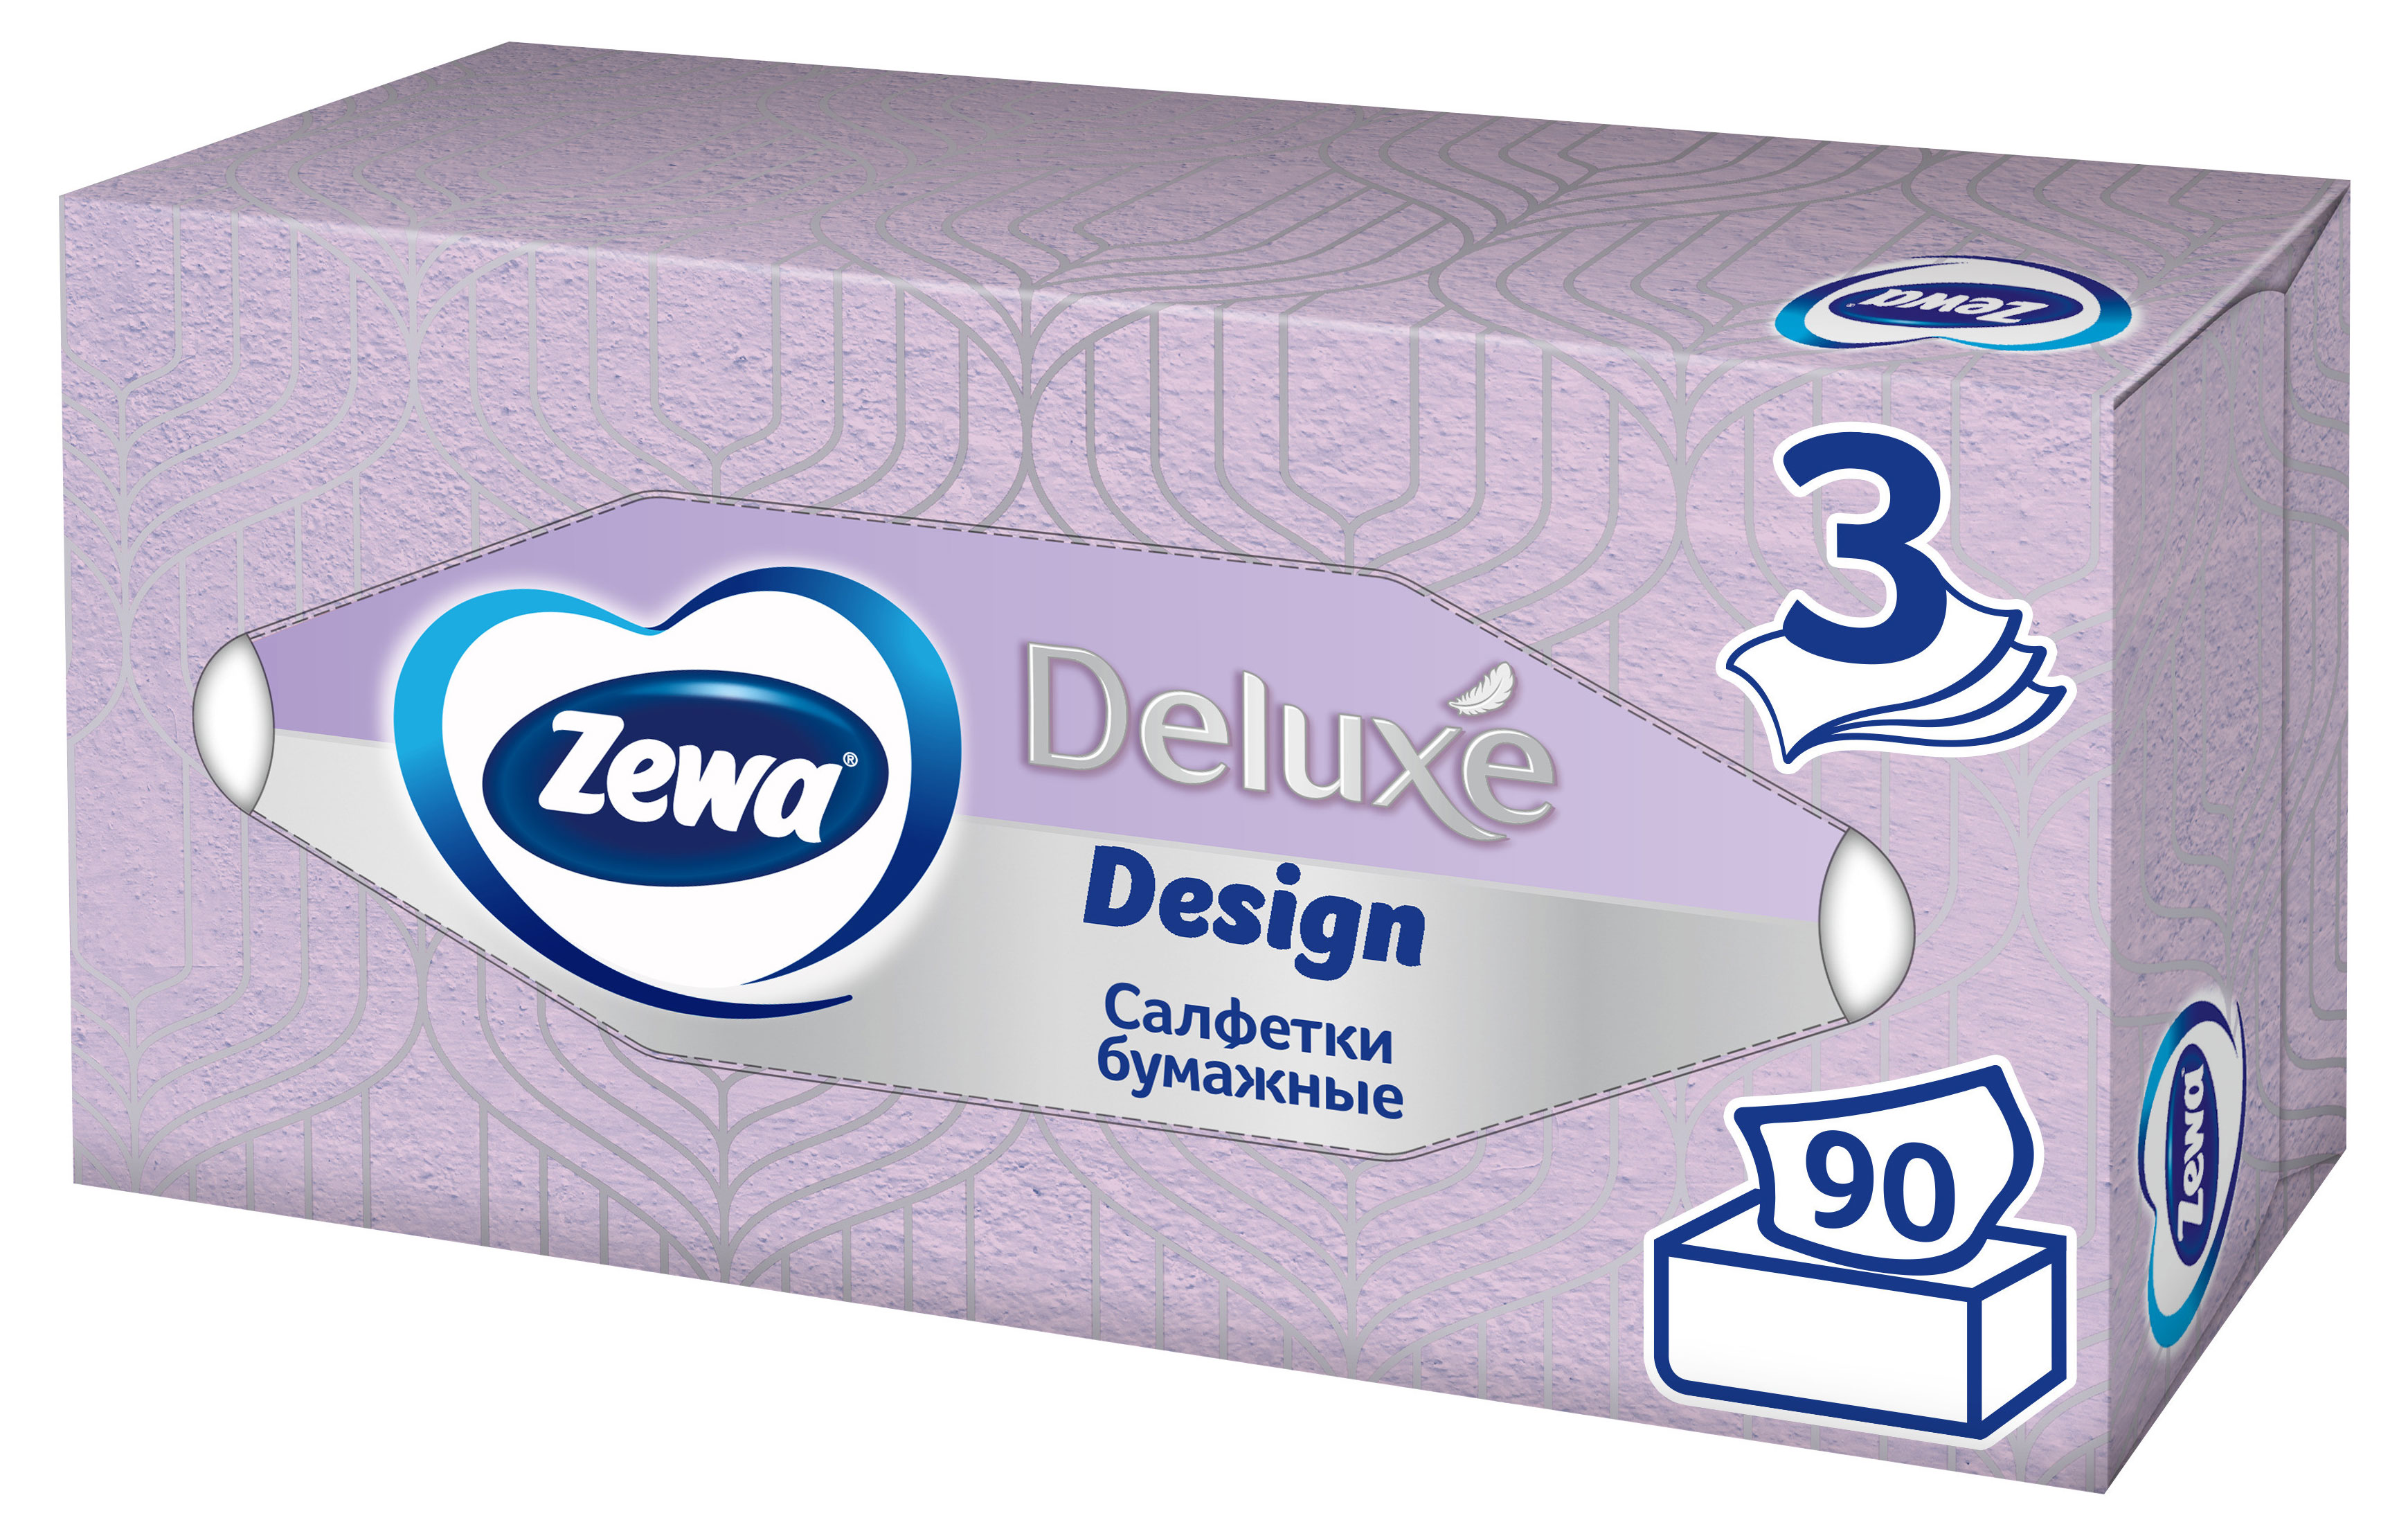 Салфетки бумажные в коробке Zewa Deluxe Design, 3 слоя, 90 шт